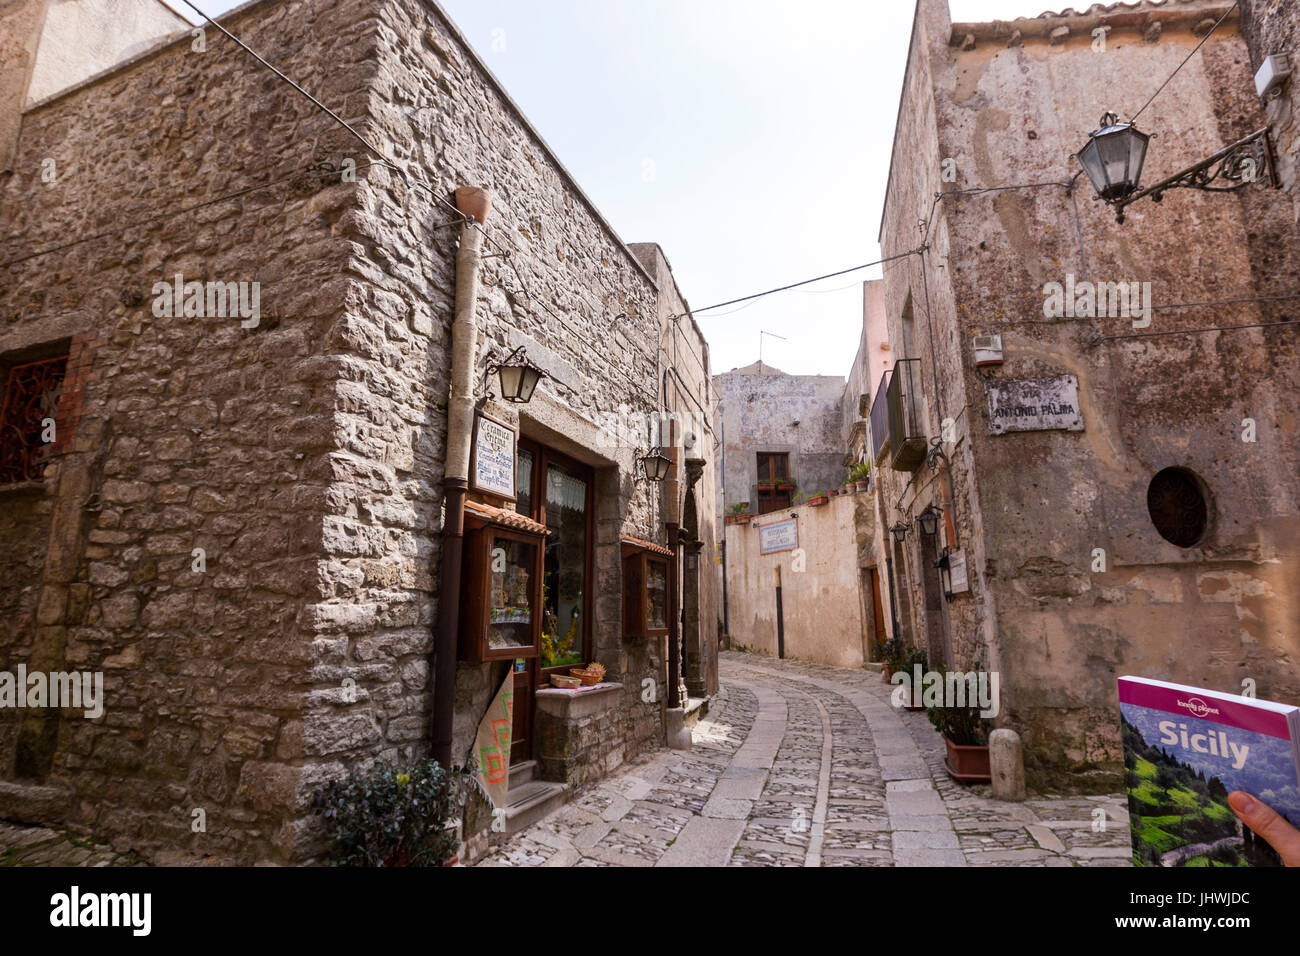 Lonely Planet Sizilien Reiseführer in einer engen Straße mit Häusern aus Stein und Kirche in Erice, Sizilien, Italien Stockfoto